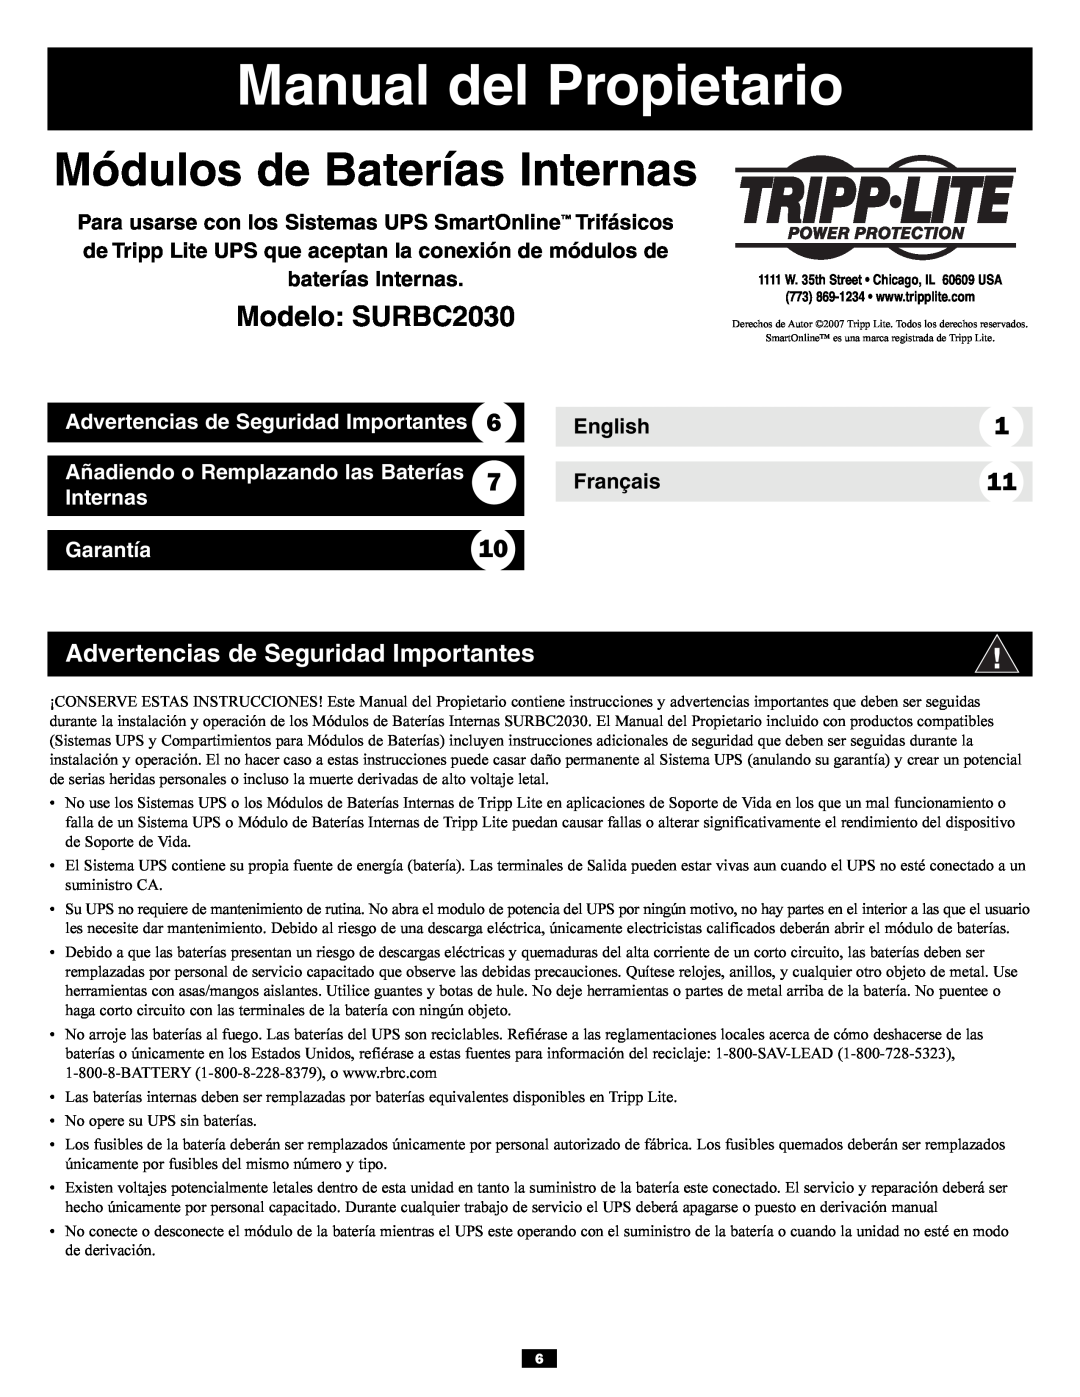 Tripp Lite owner manual Manual del Propietario, Módulos de Baterías Internas, Modelo SURBC2030, English 7 Français 